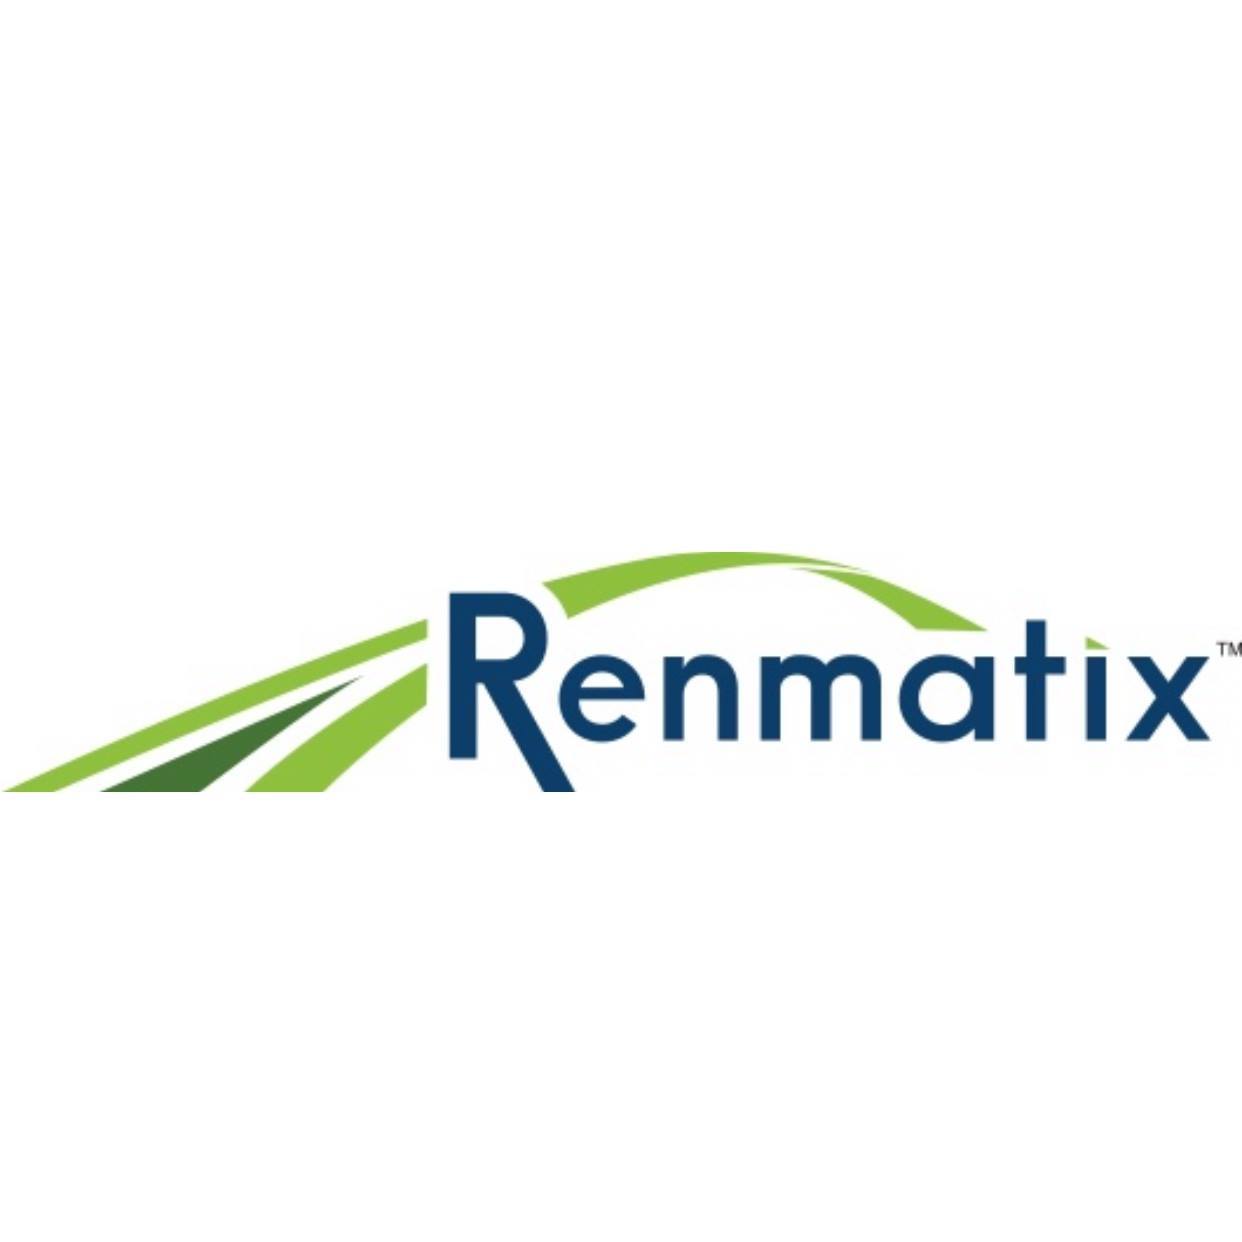 Renmatix